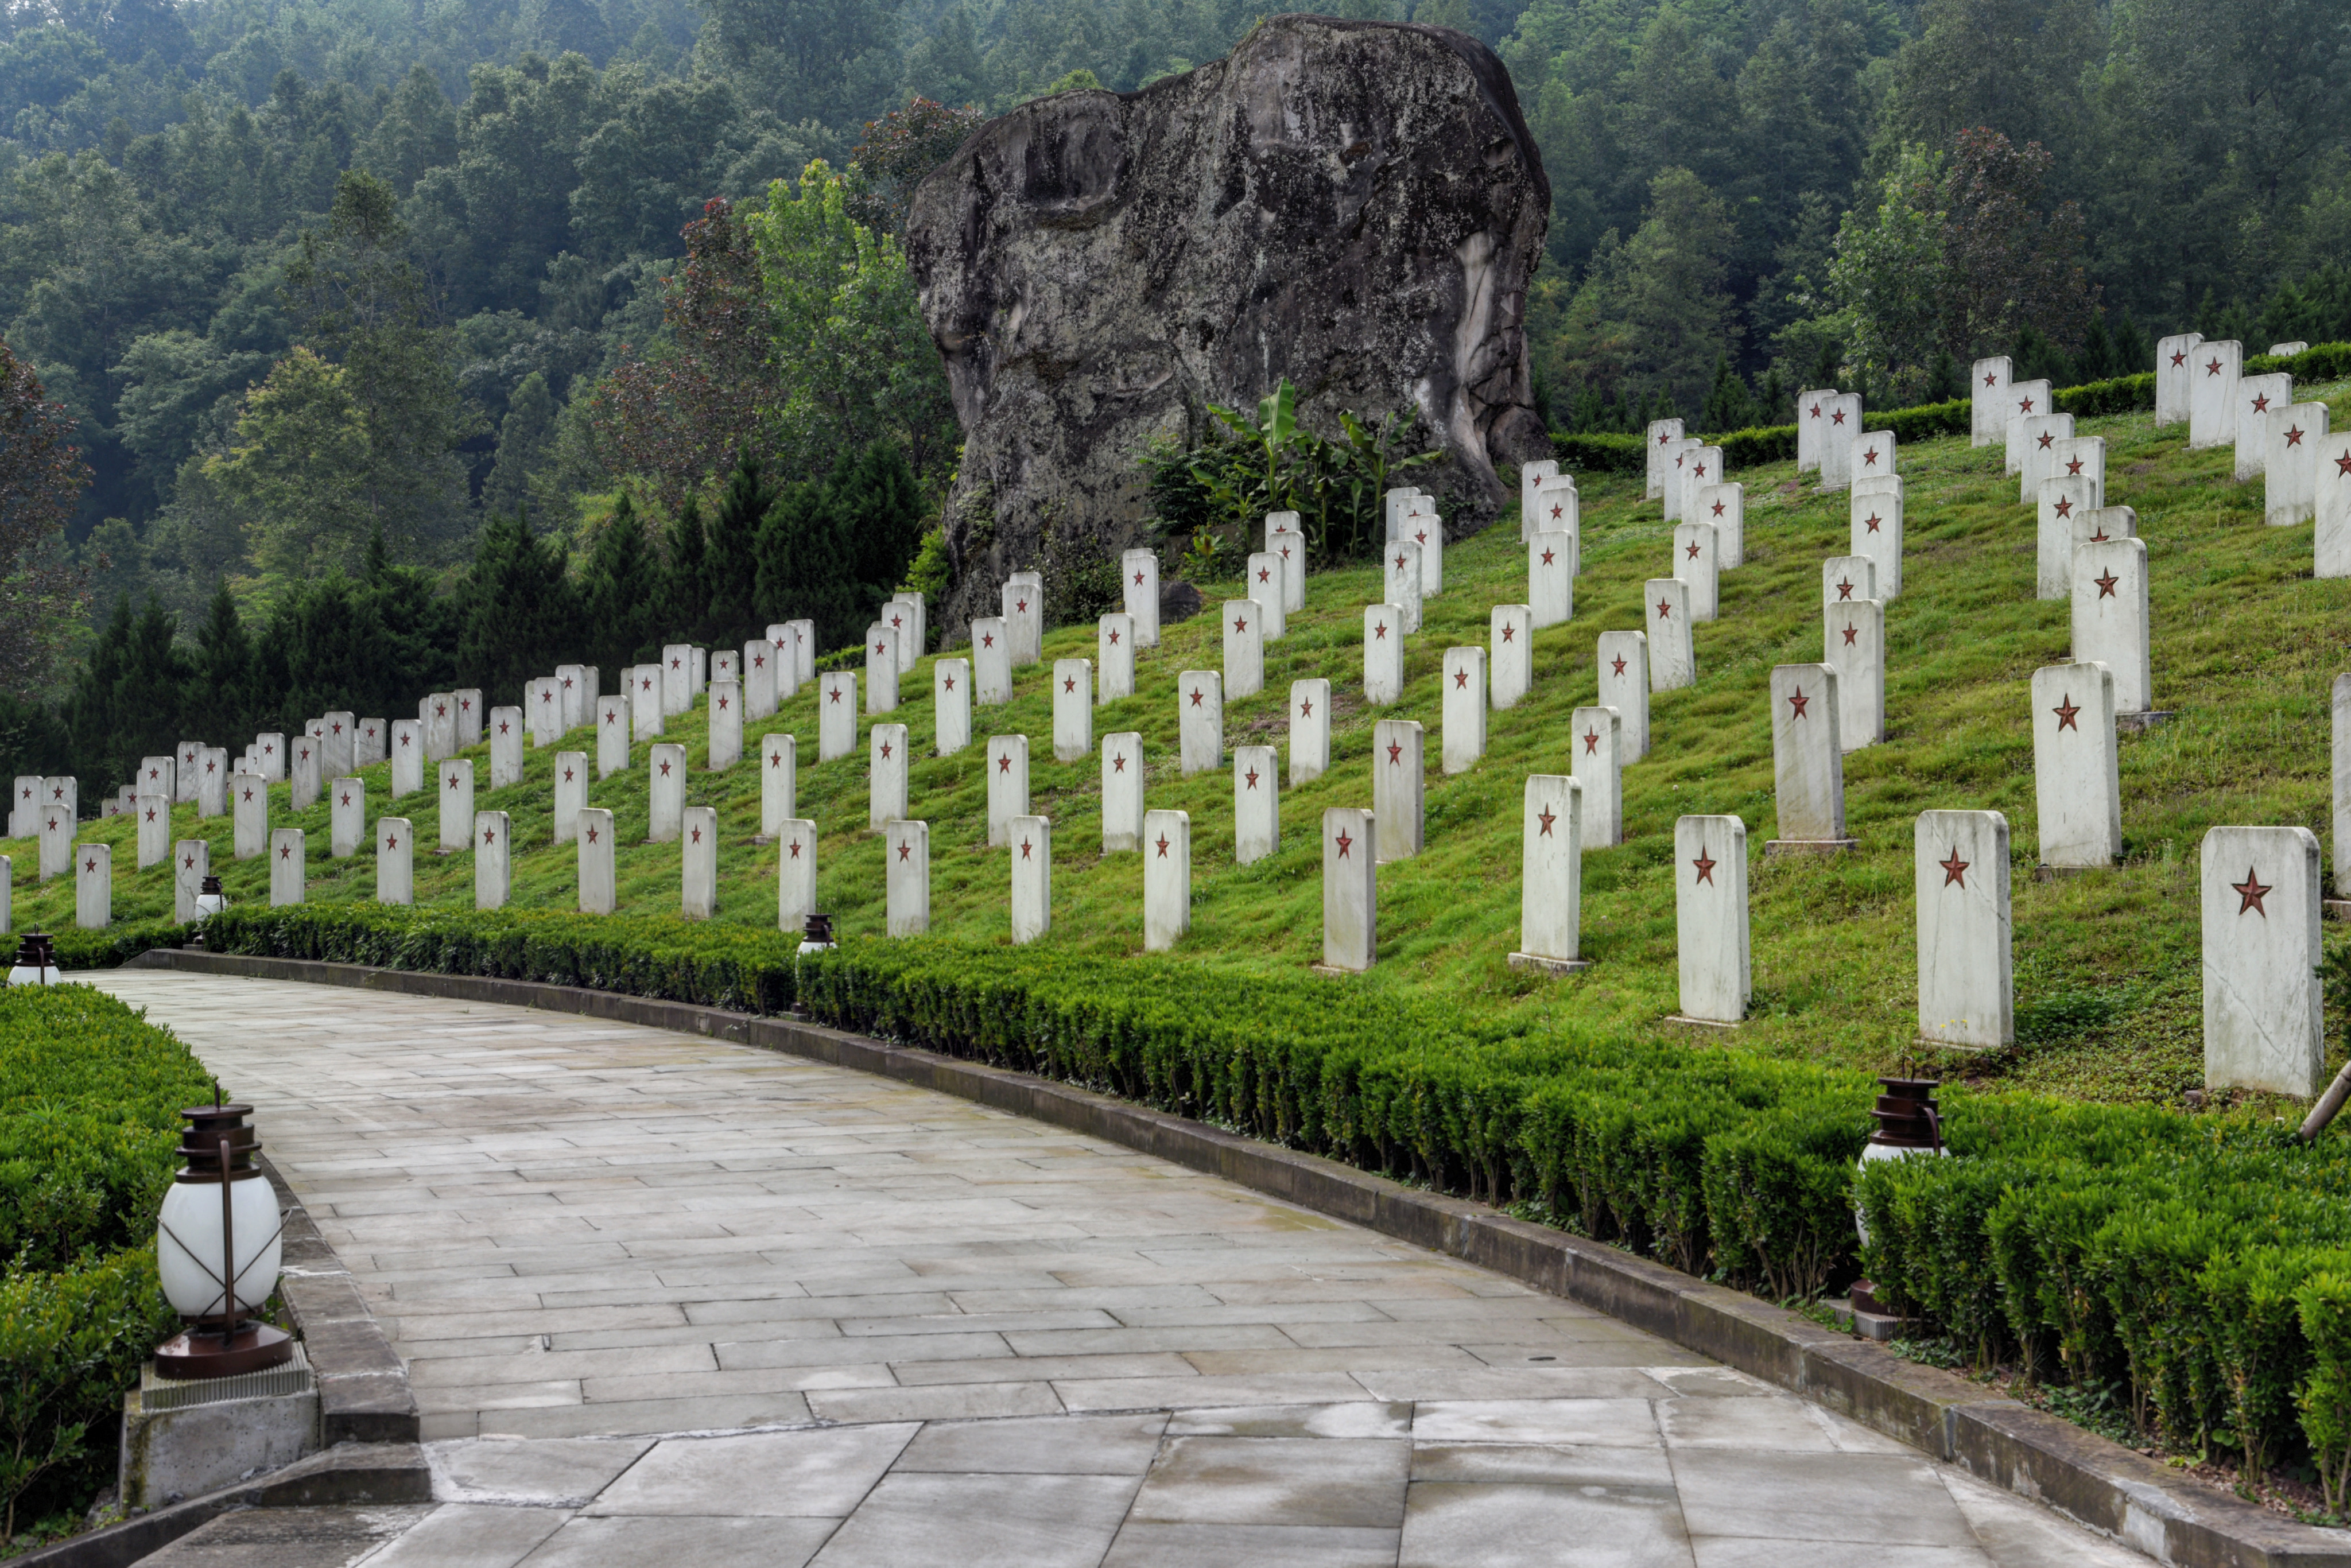 扎西红军烈士陵园图片